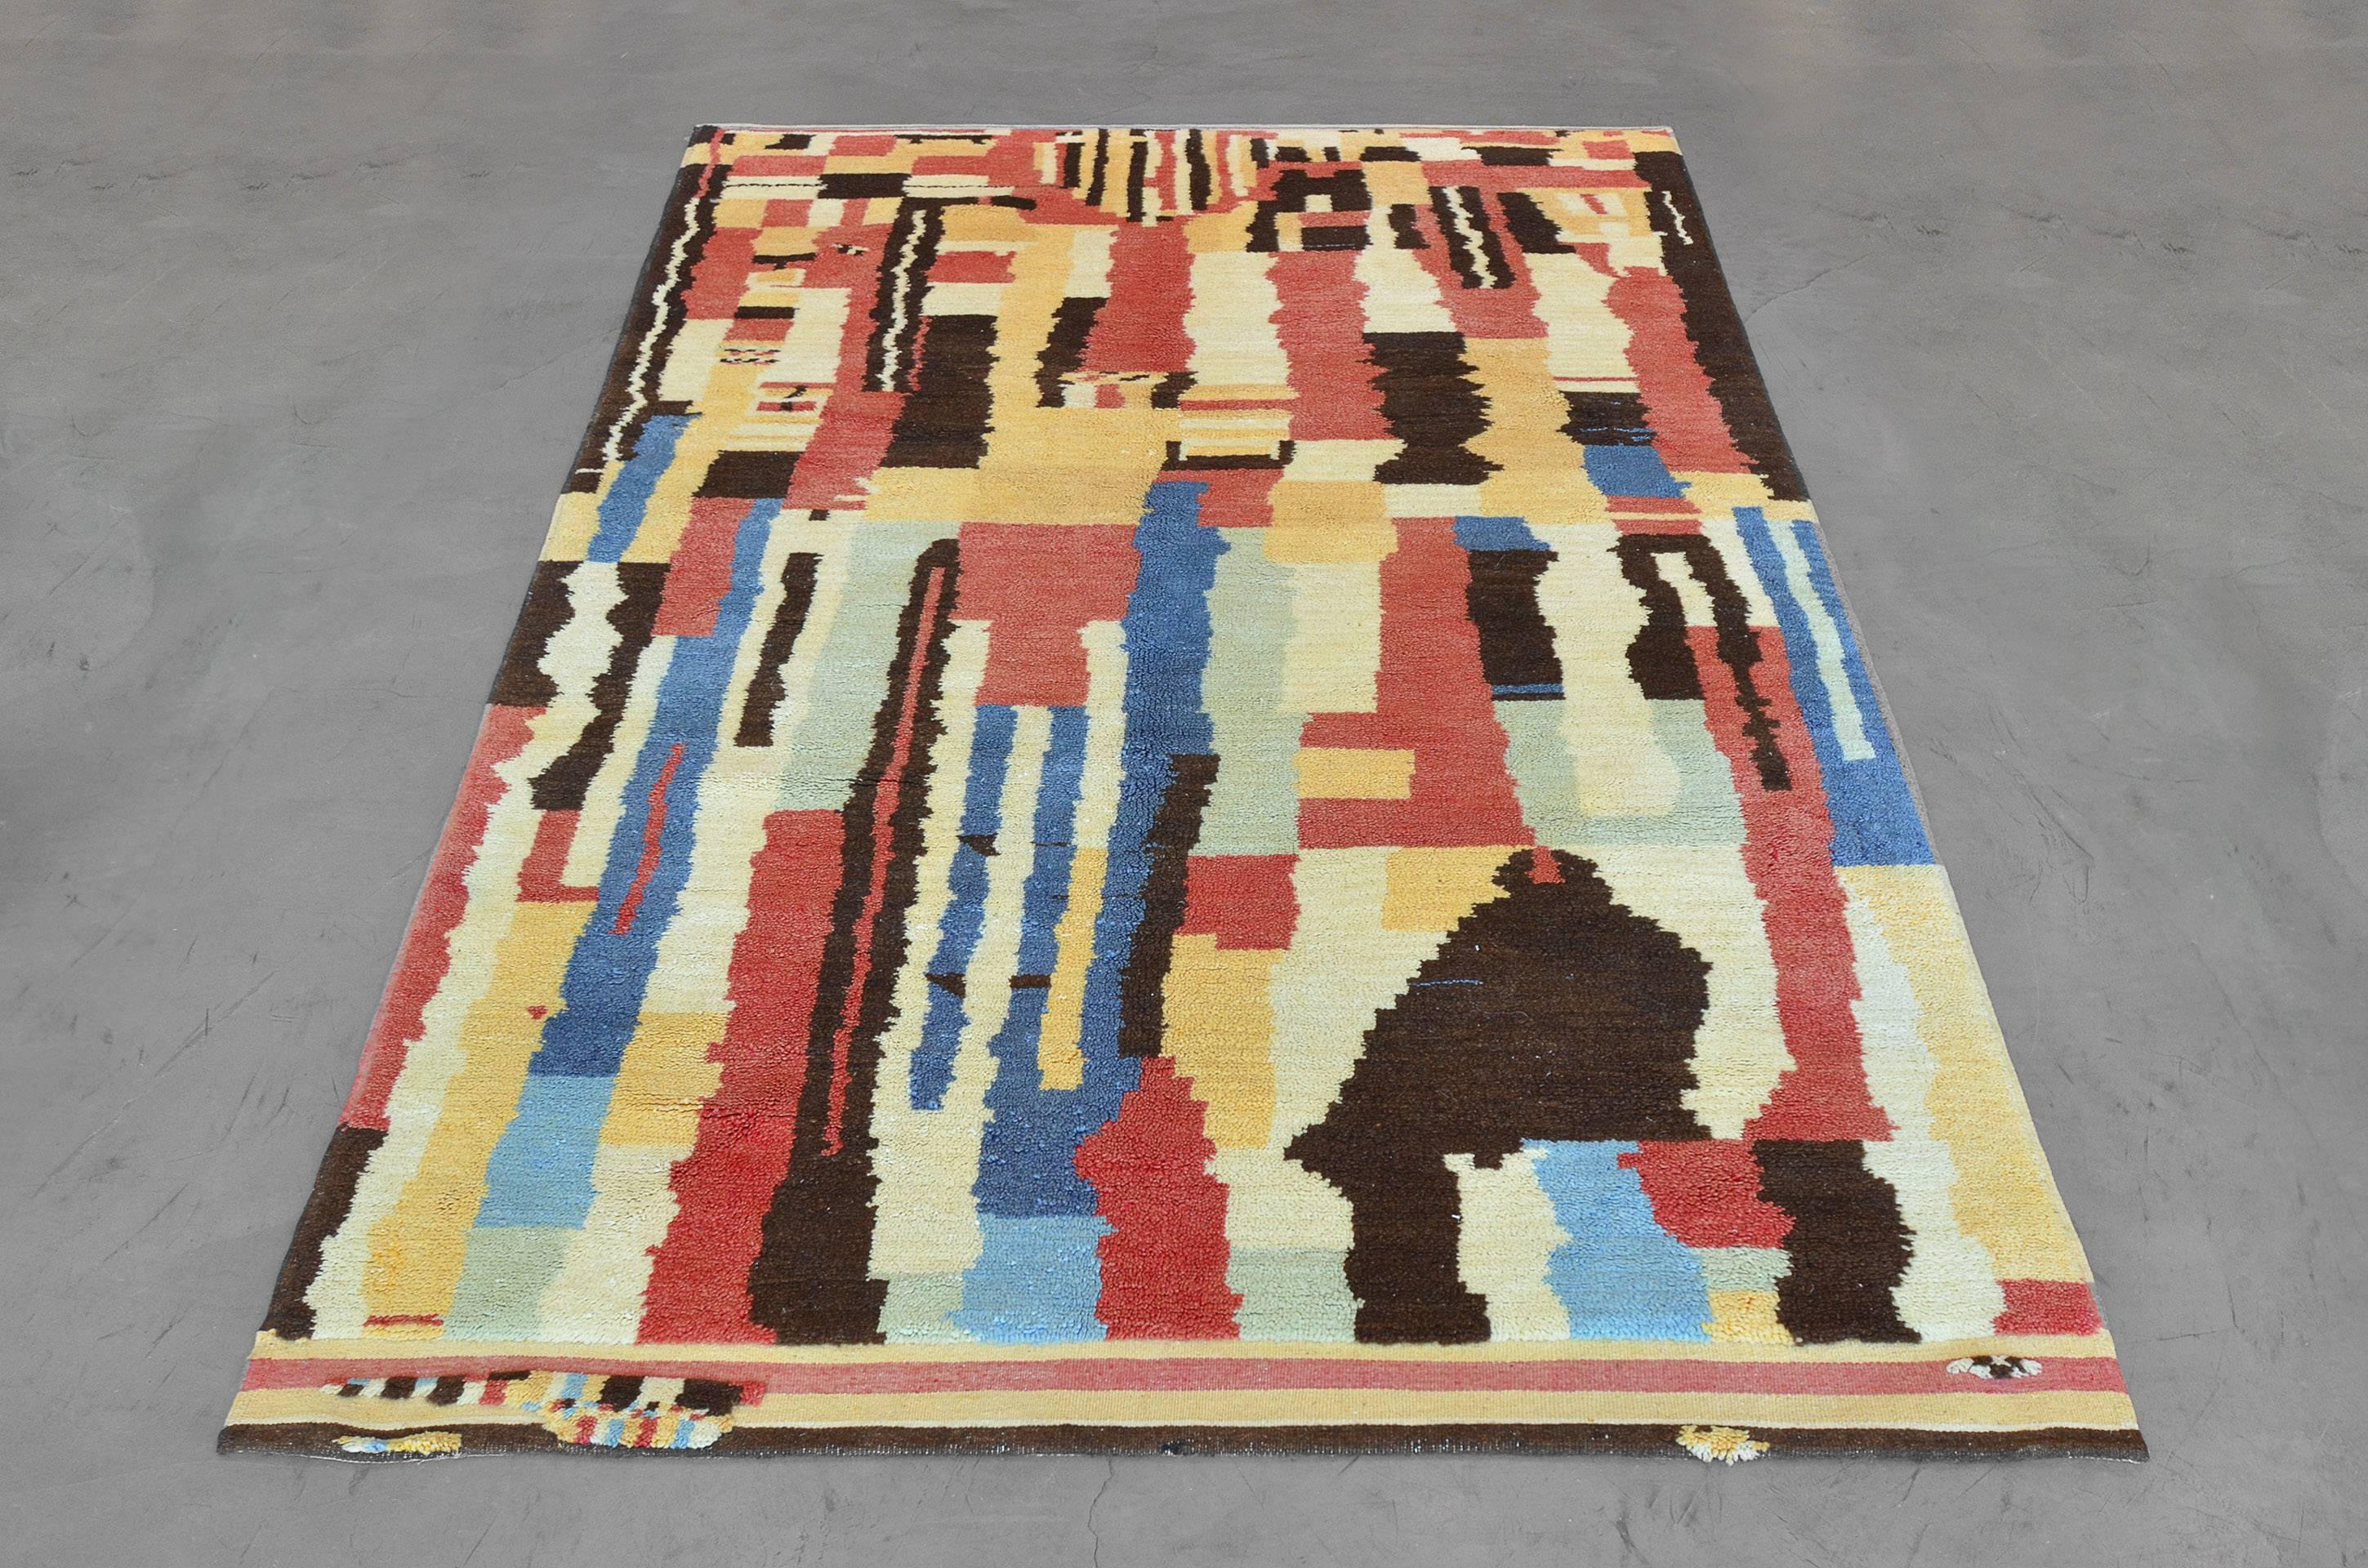 Ce tapis marocain en laine noué à la main à la fin du XXe siècle présente un collage expressif de blocs de couleurs rectilignes et de segments irréguliers bien mélangés dans une combinaison vive de rouge, de cédrat, de beige, de noir et de bleu.